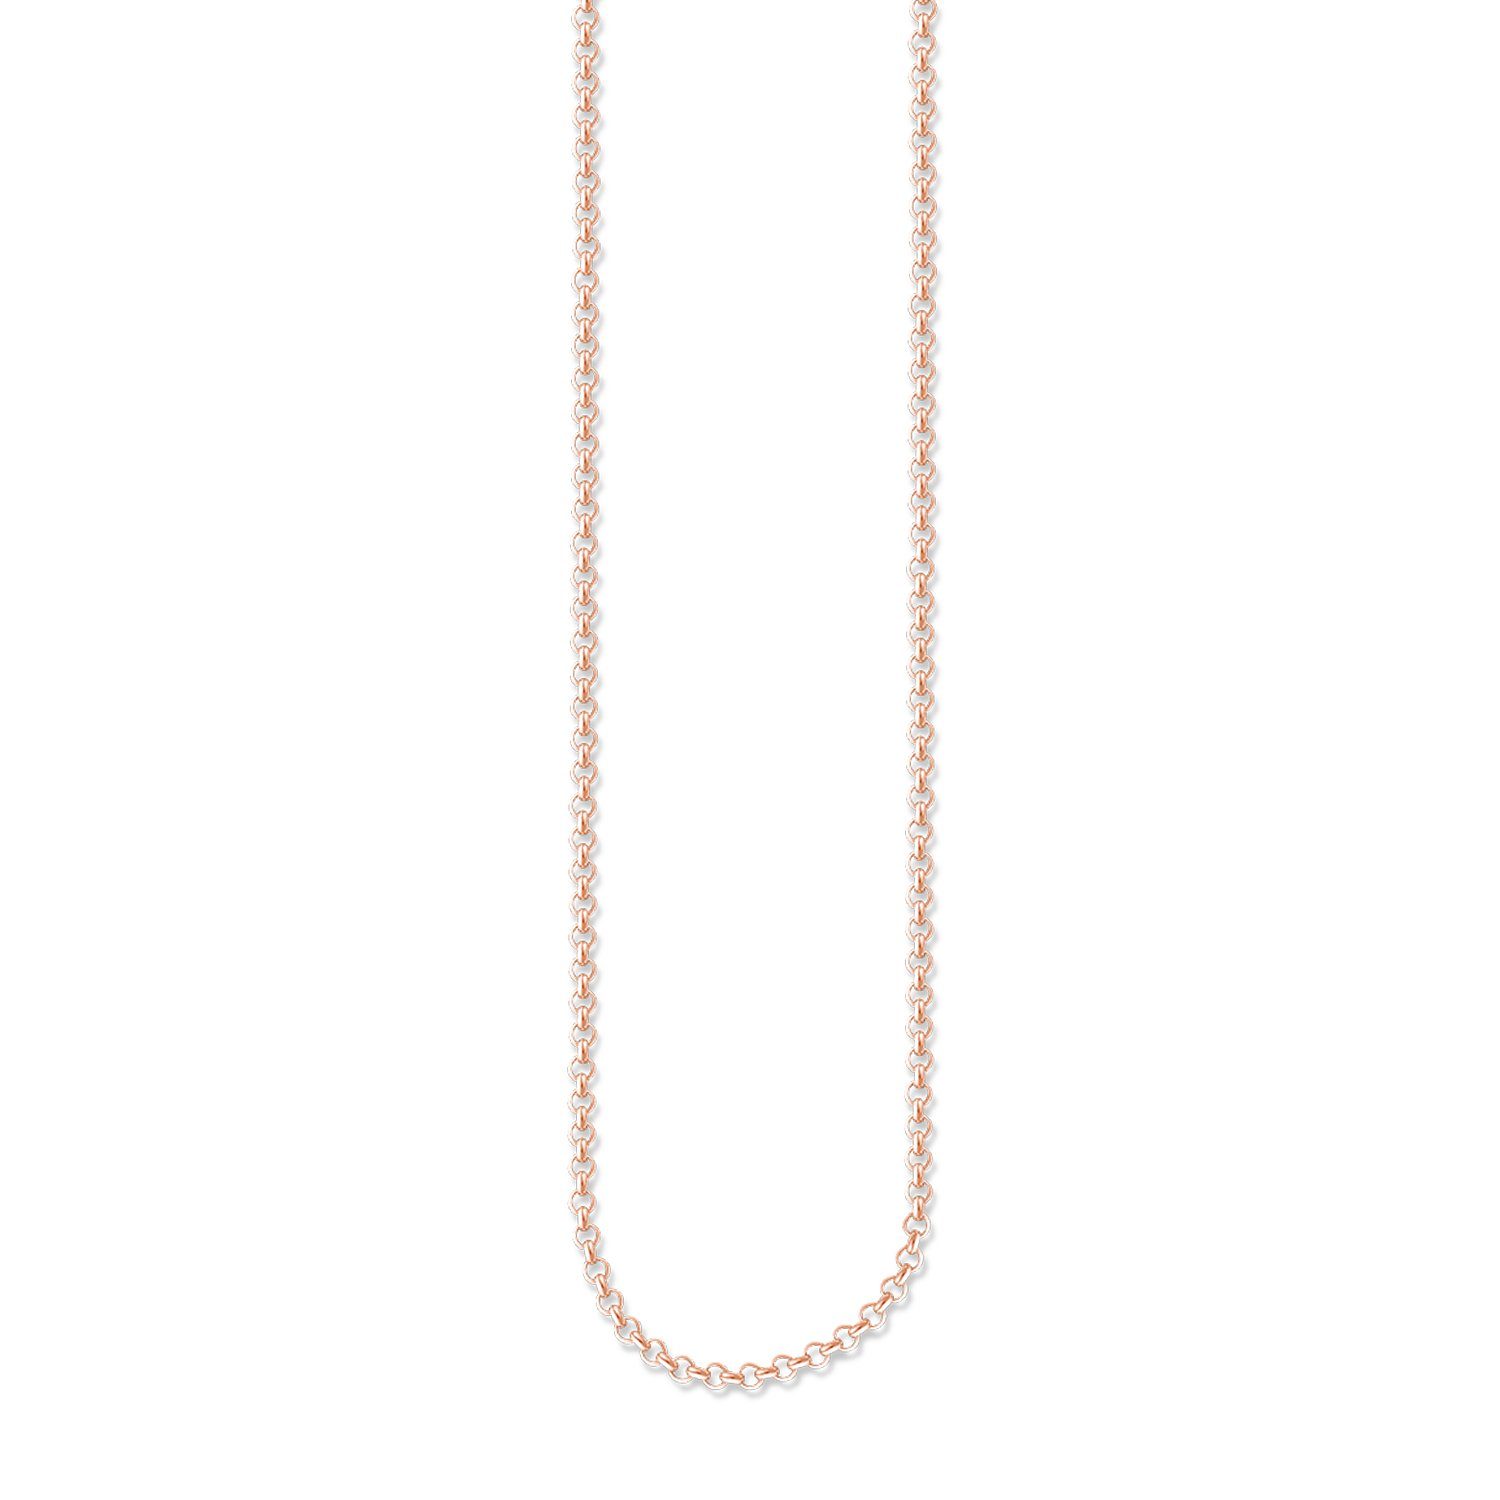 THOMAS SABO Kette ohne Anhänger KE1219-415-12 Halskette Damen Silber Roségold Vergoldet 45 cm